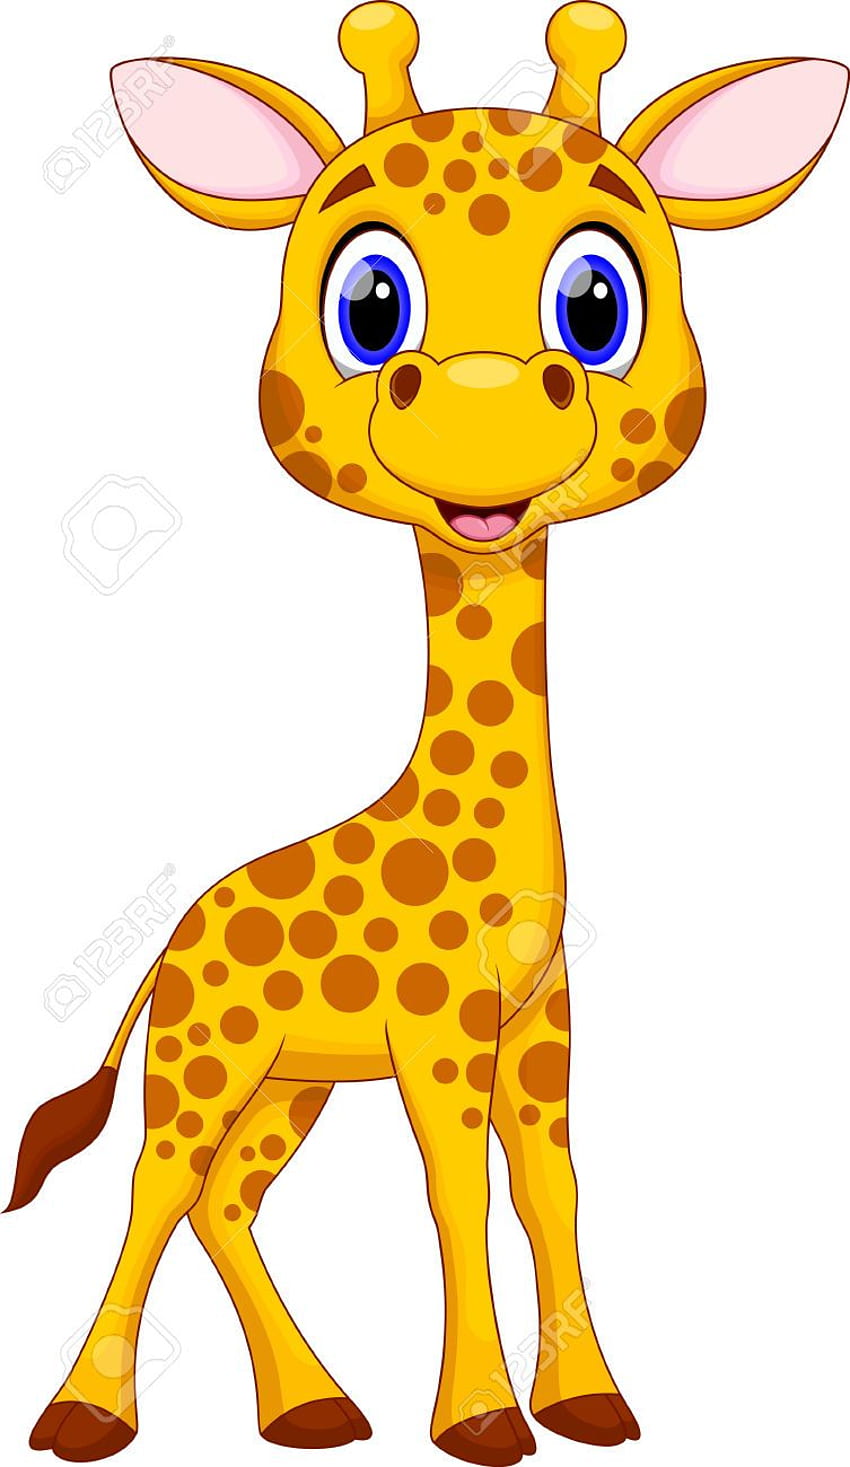 Giraffe sketch icon. | Stock vector | Colourbox